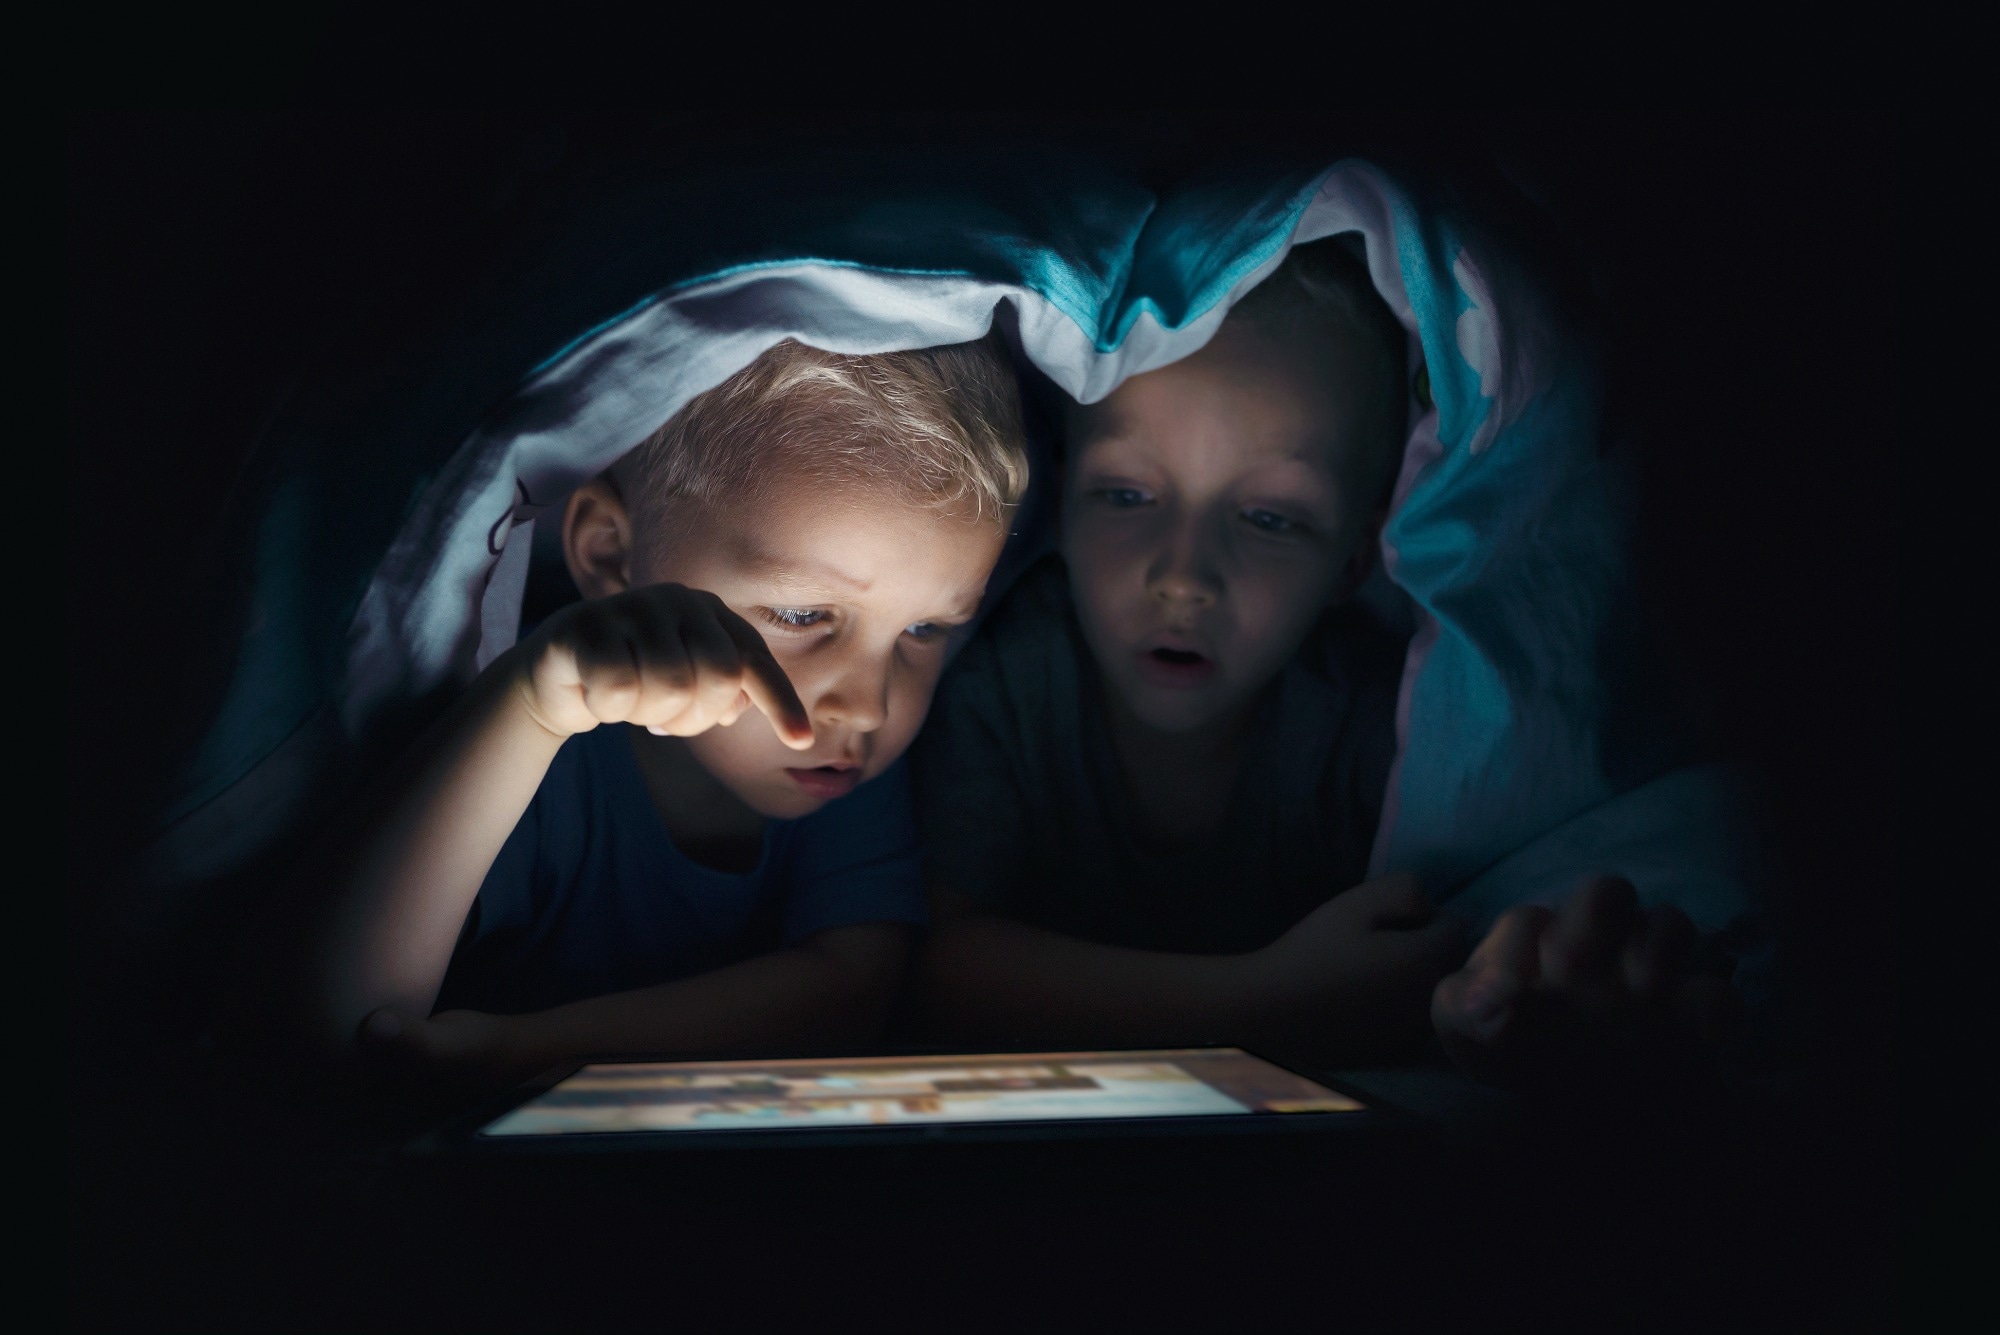 مطالعه: استفاده مشکل ساز از رسانه های کودک در طول همه گیری COVID-19.  اعتبار تصویر: Proxima Studio/Shutterstock